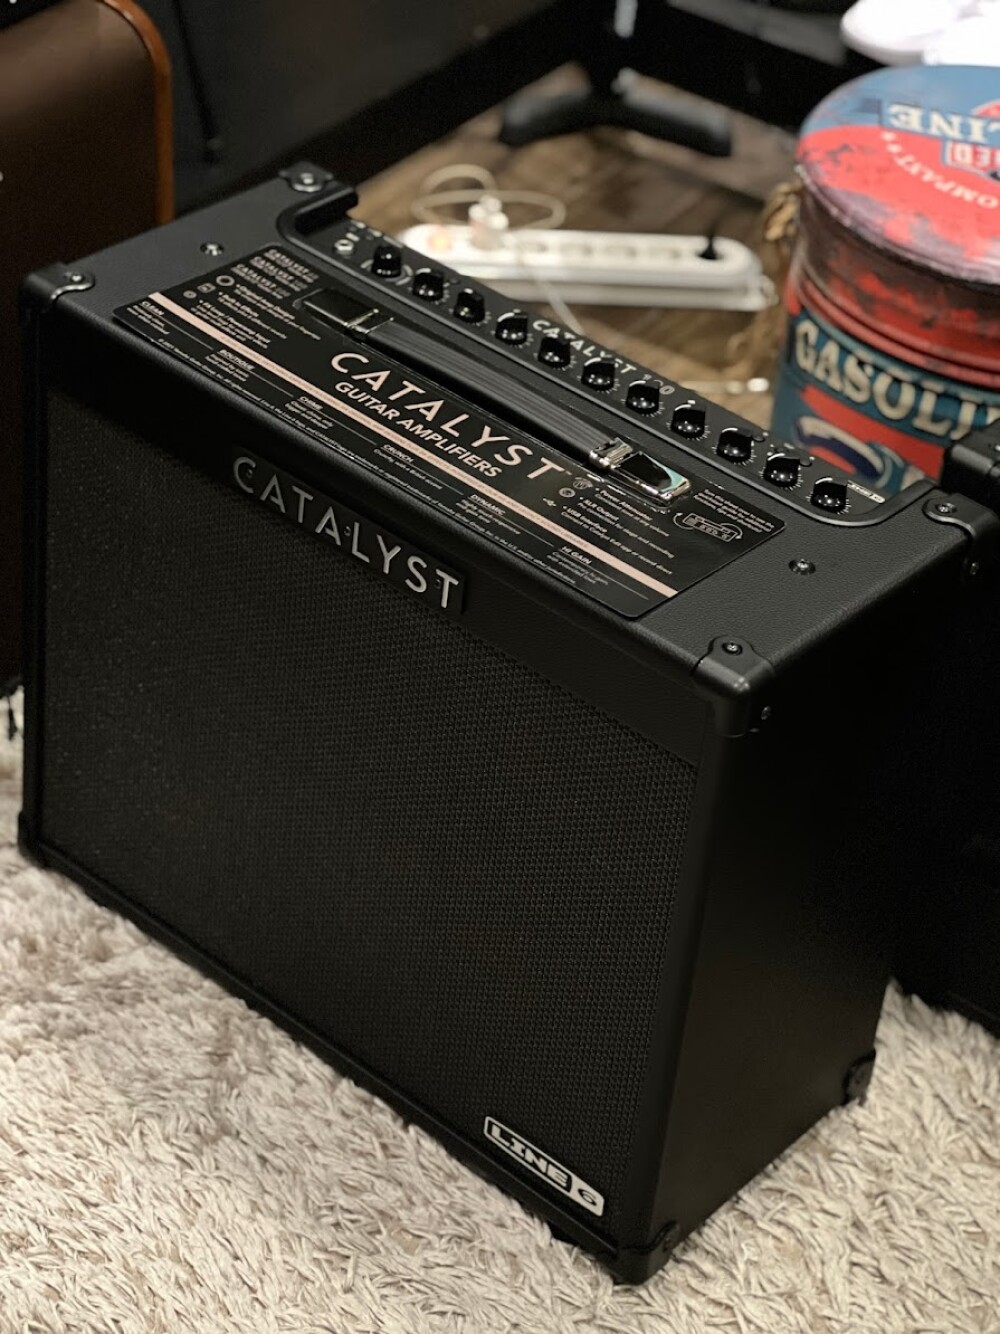 Catalyst 100W Ampli guitare électrique combo Line 6